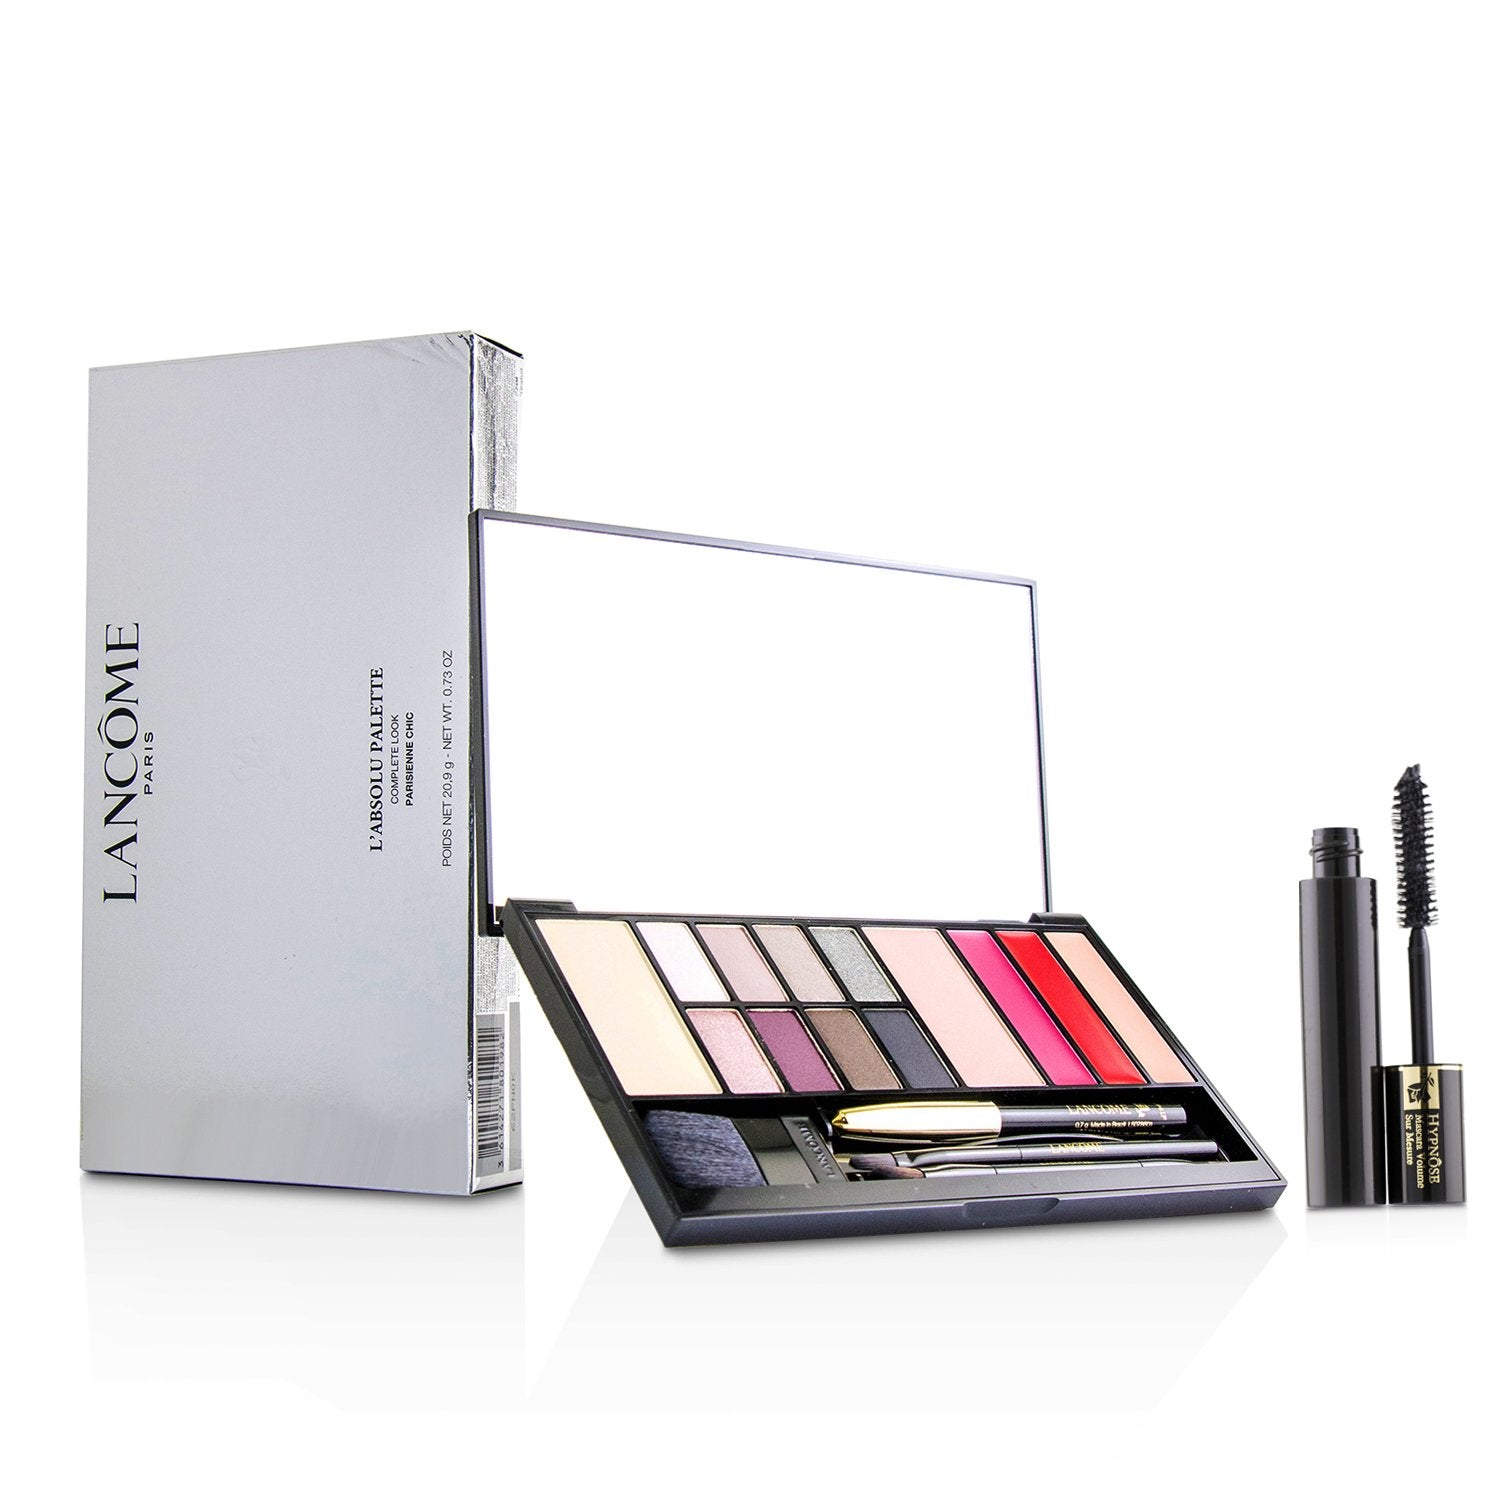 LANCOME L'ABSOLU PALETTE COMPLETE LOOK | Shop Cosmetics at PRAAGNEEK | UAE